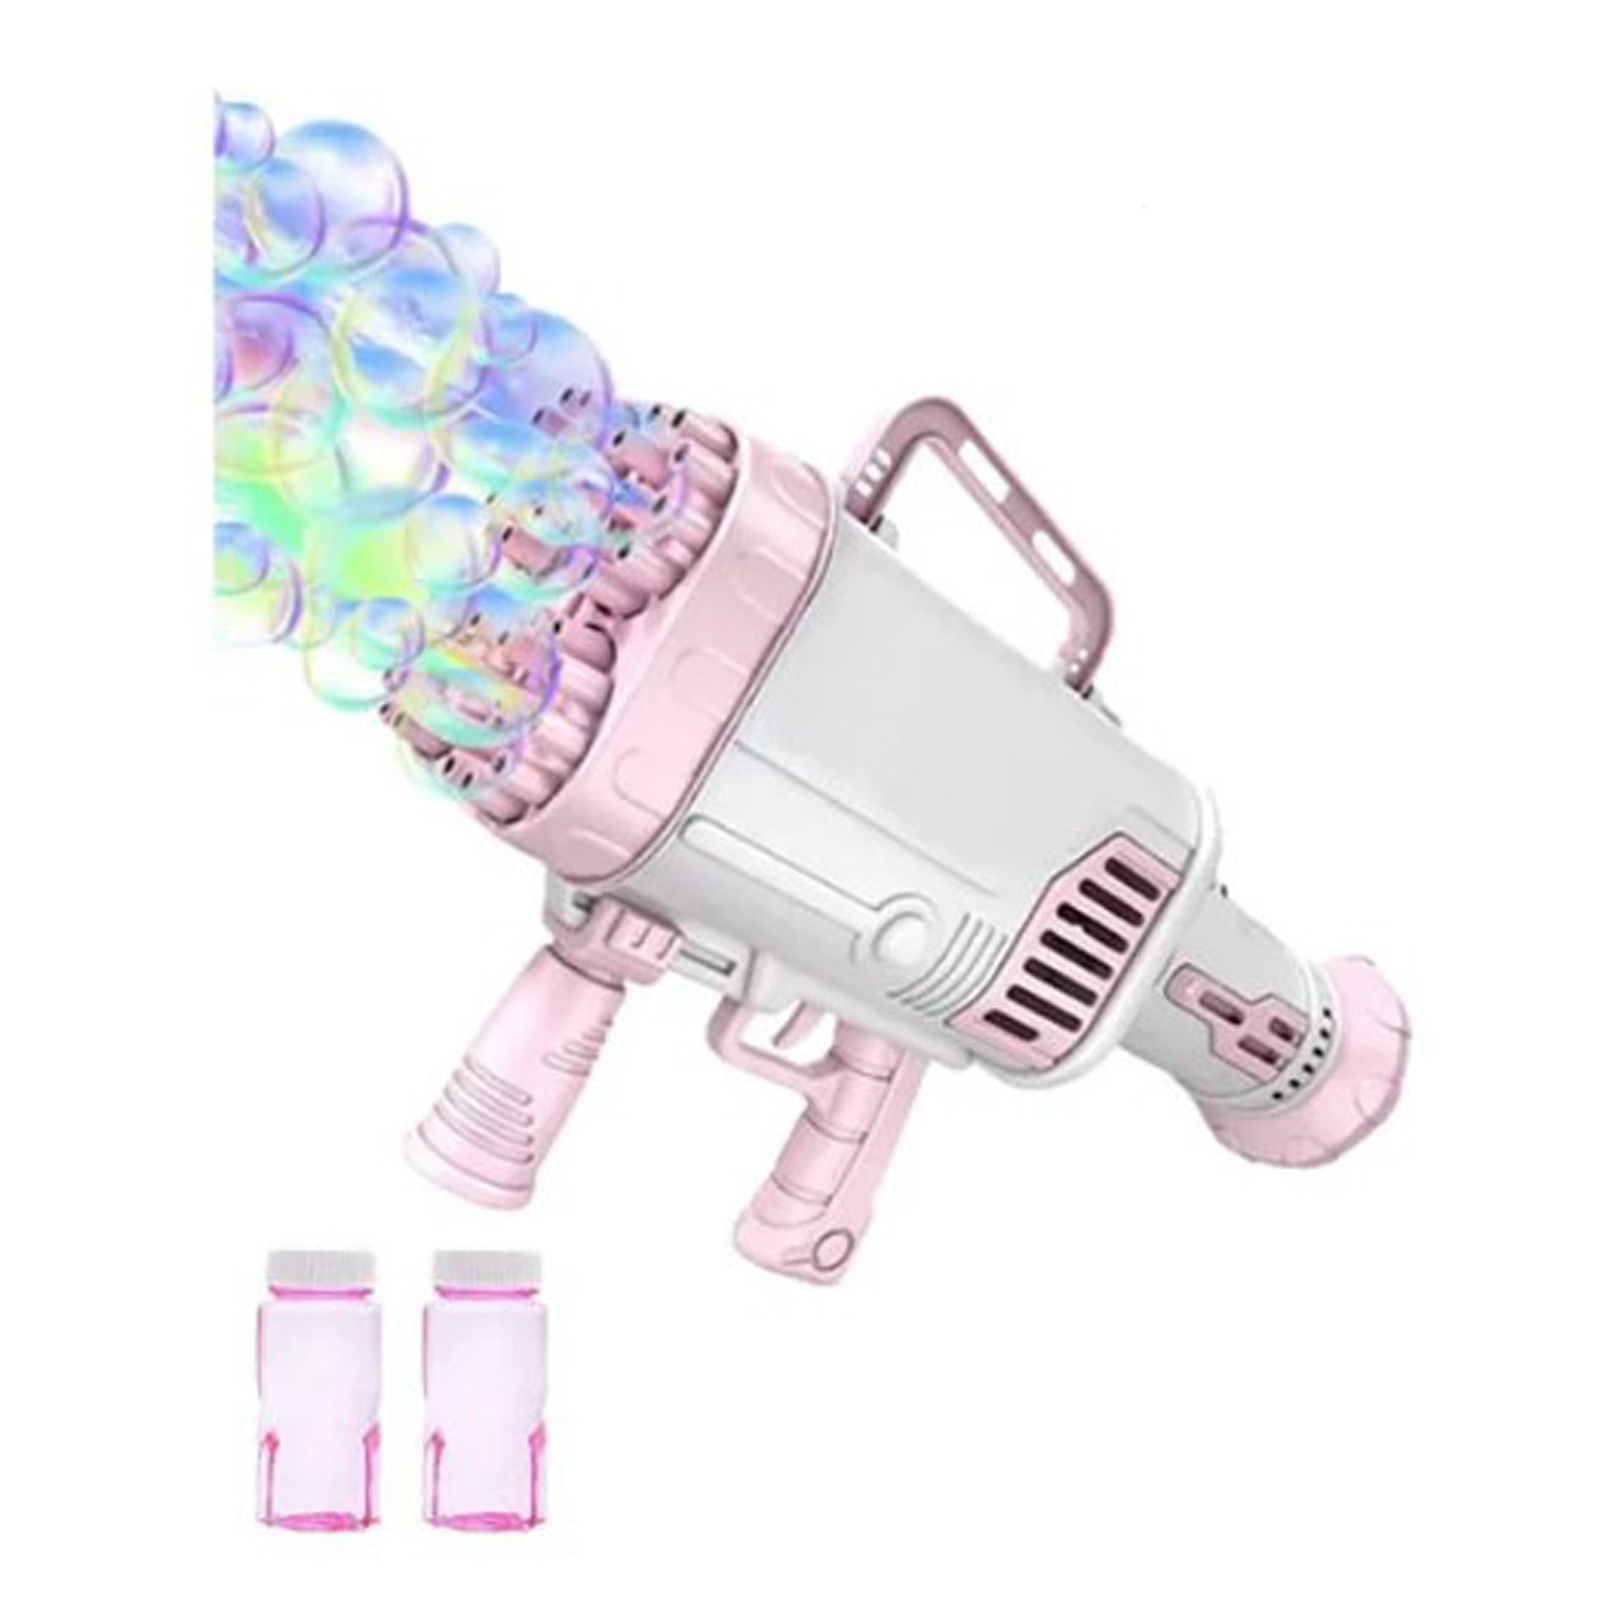 Пушка-Генератор мыльных пузырей Market toys lab розовый генератор мыльных пузырей shantou toys базука голубой